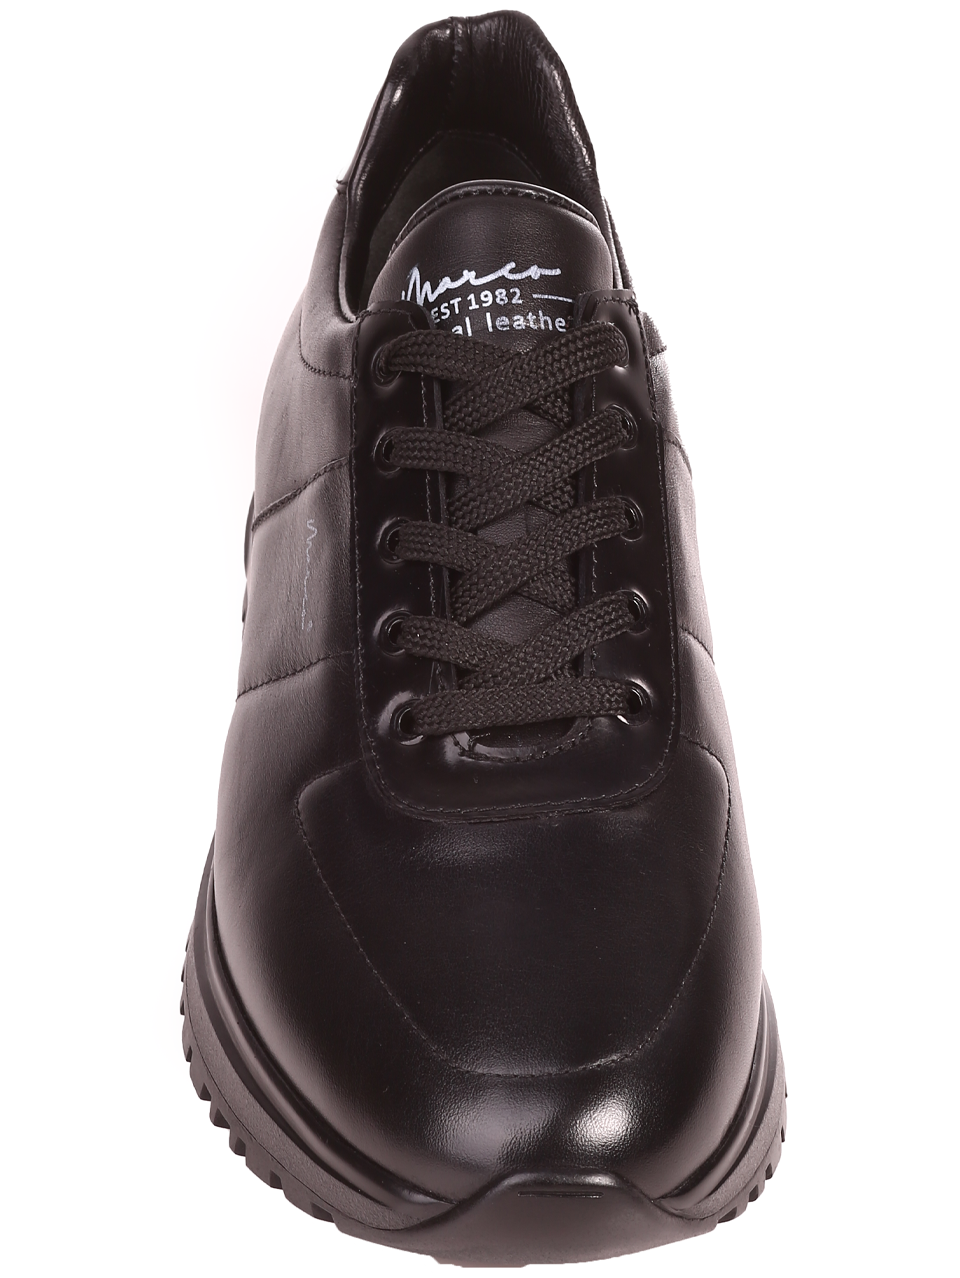 Ежедневни мъжки обувки от естествена кожа  152-19493 S-2 black